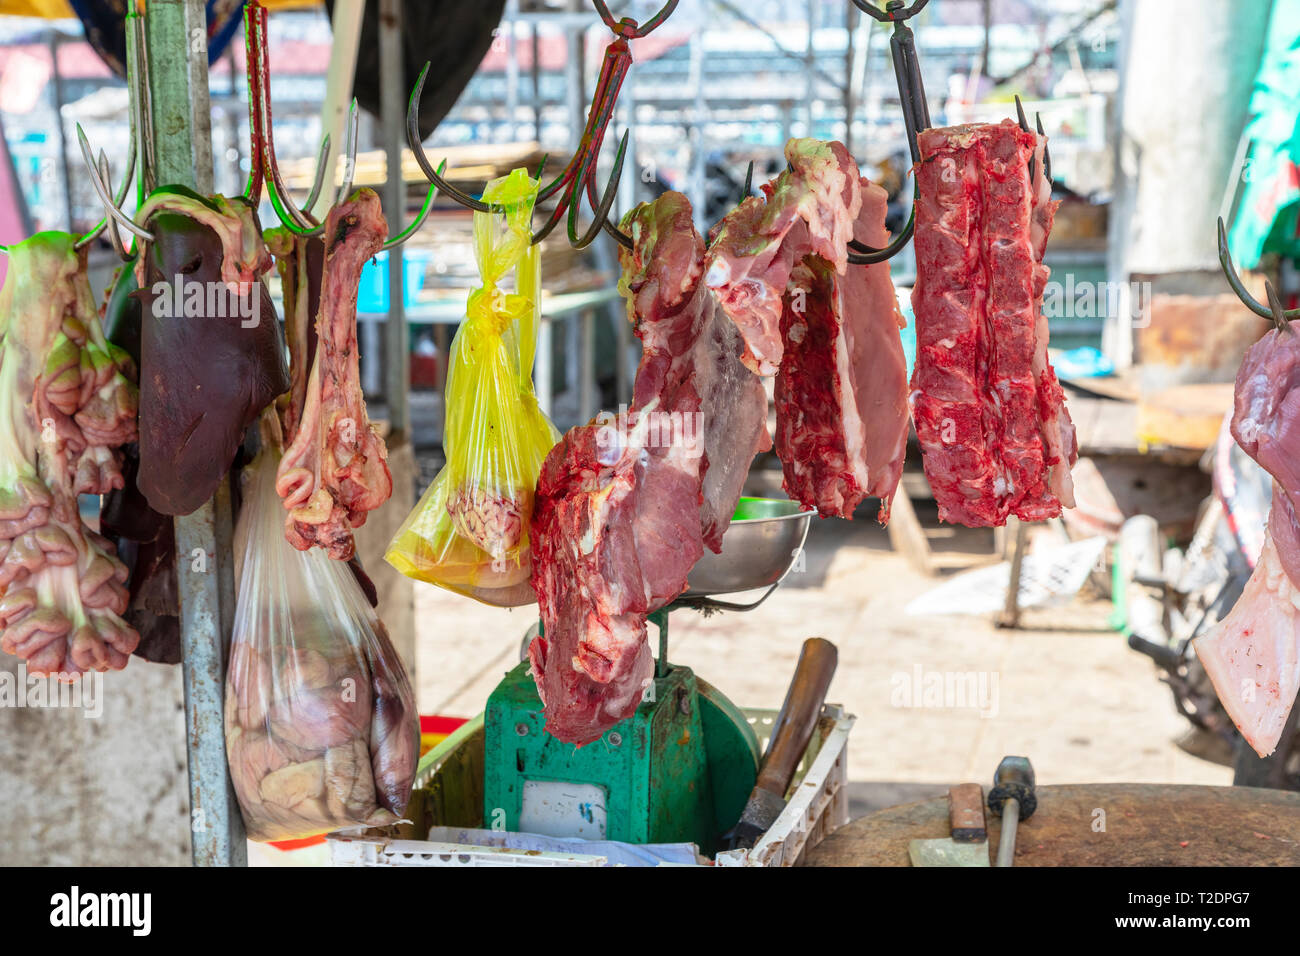 Metzgerei mit frischem Fleisch und schlachteten Tiere, Straße Marktstand, Dinh Cau, Insel Phu Quoc, Vietnam, Asien Stockfoto